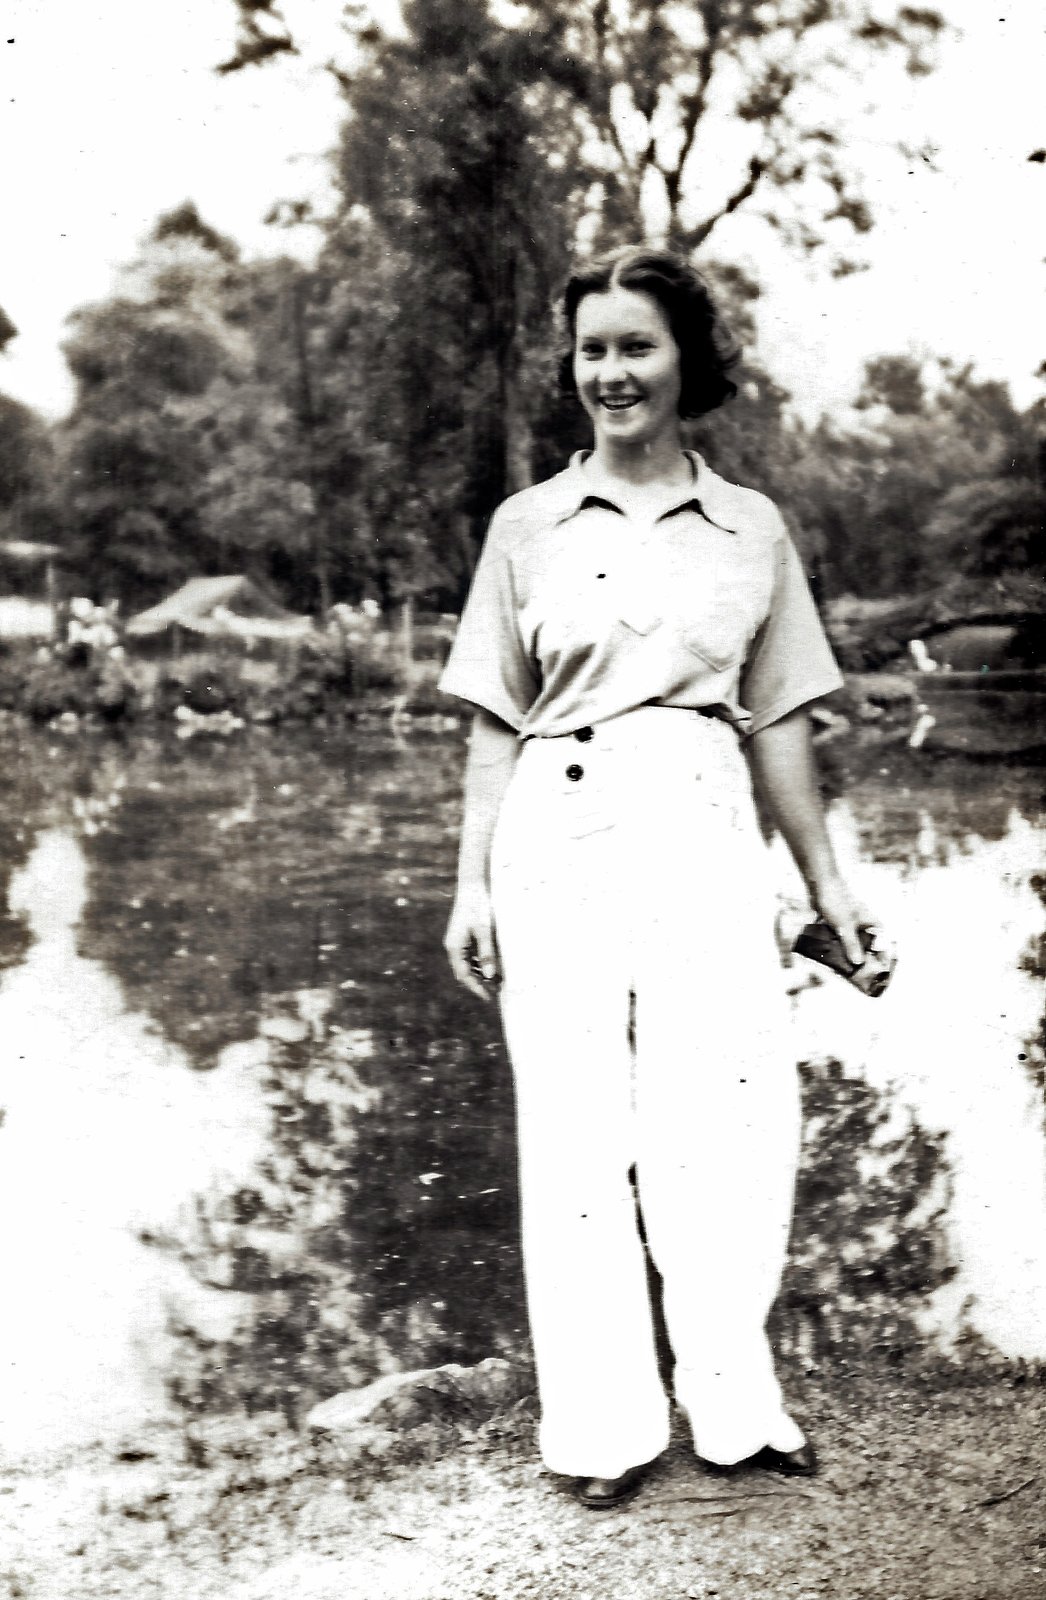 Maria Yohe, c. 1940s